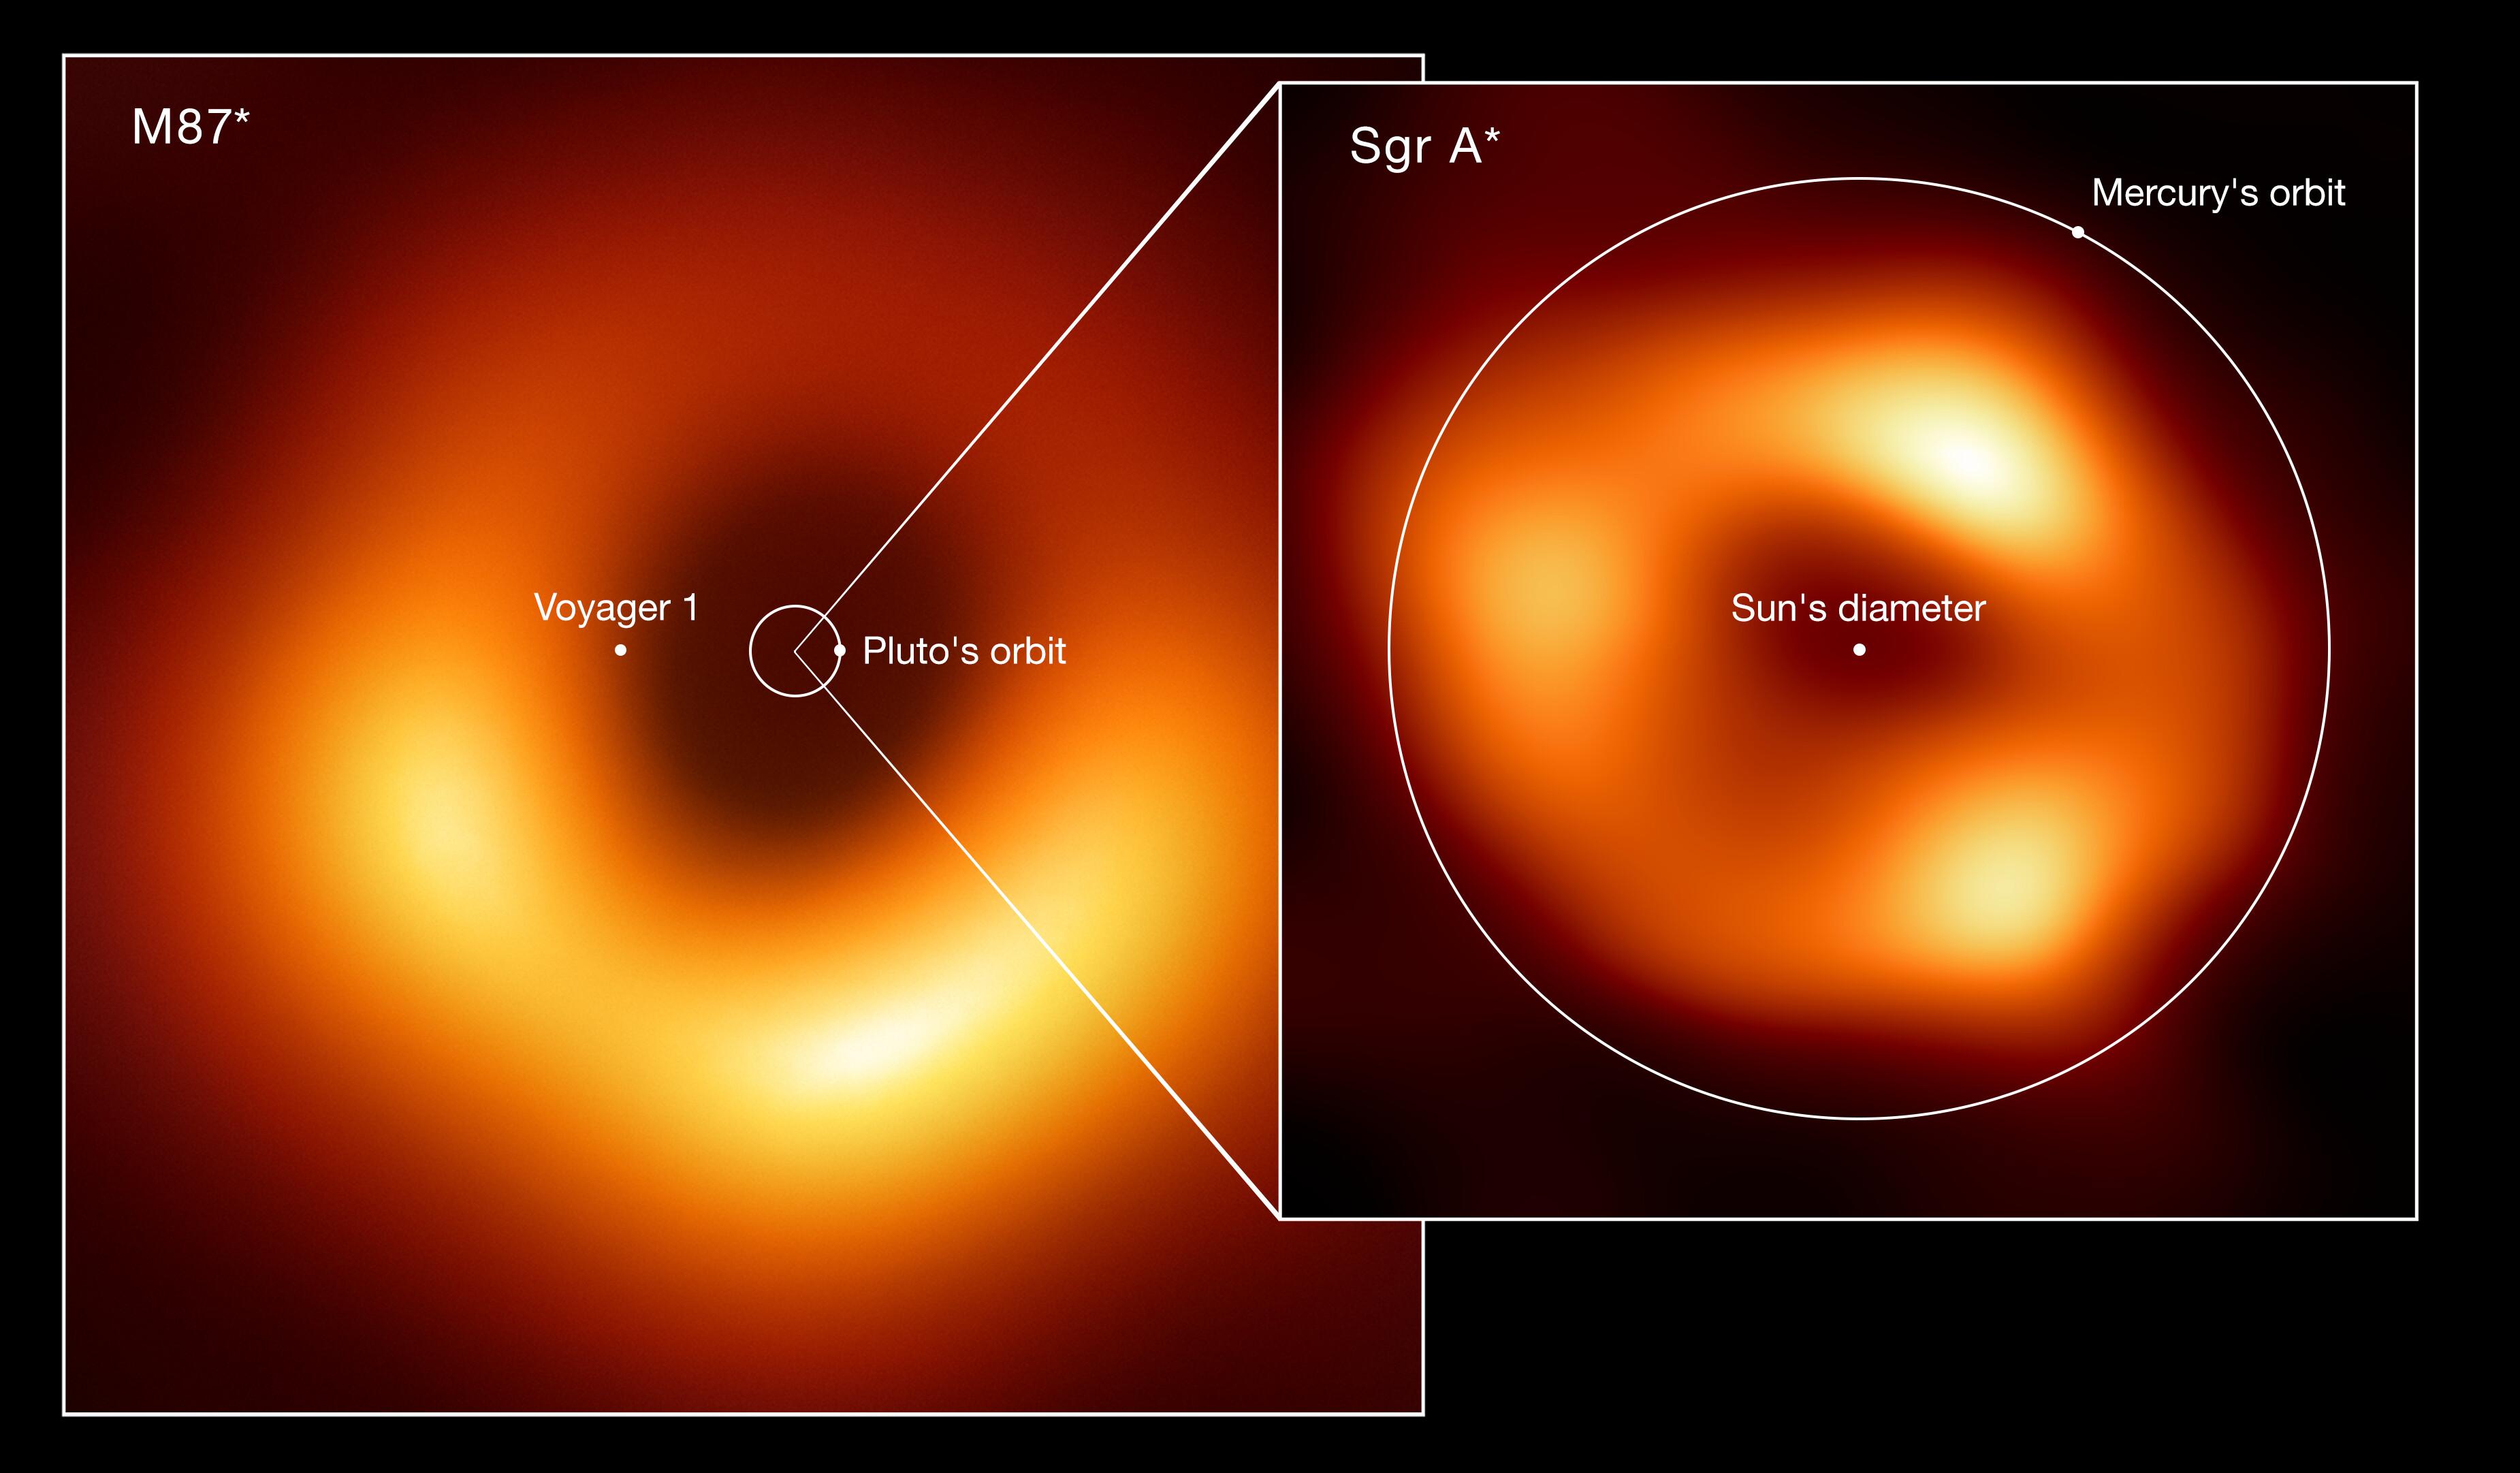 Comparaison de la taille des trous noirs M87*, au cœur de la galaxie Messier 87, et Sagittarius A* (Sgr A*), au centre de la Voie lactée. Pour échelle, les orbites de Pluton et de Mercure, ainsi que le diamètre du Soleil et la position actuelle de la sonde spatiale Voyager 1, le vaisseau spatial le plus éloigné de la Terre. En raison de leur distance relative à notre planète, les deux objets semblent avoir la même taille dans le ciel. [EHT collaboration - Lia Medeiros, xkcd]